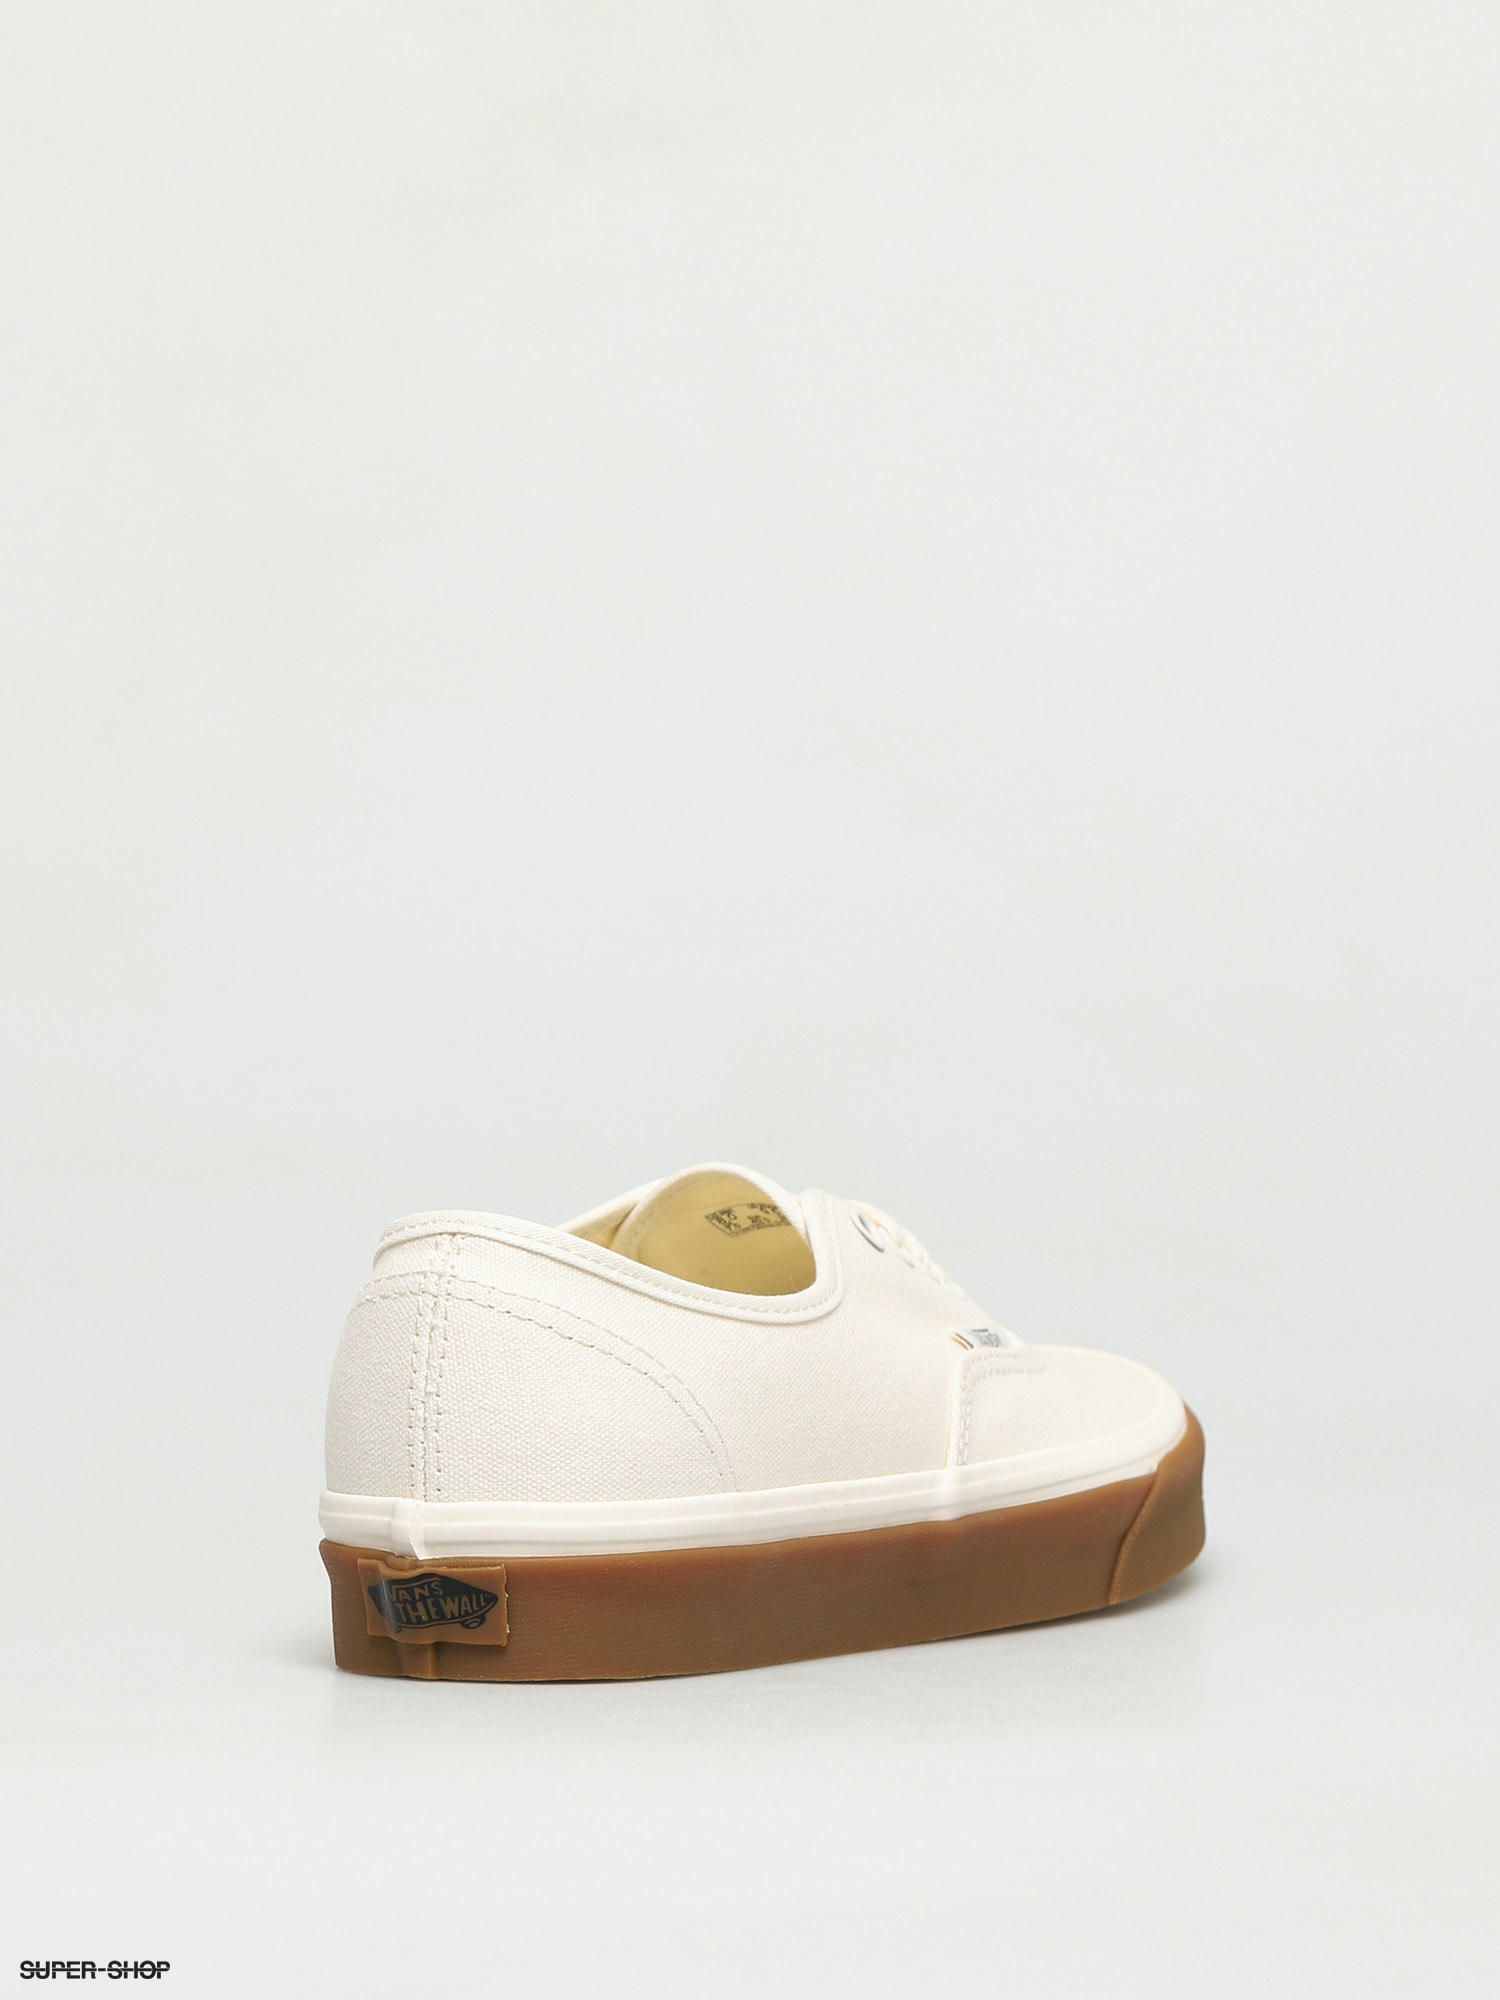 vans authentic white canvas skate shoes